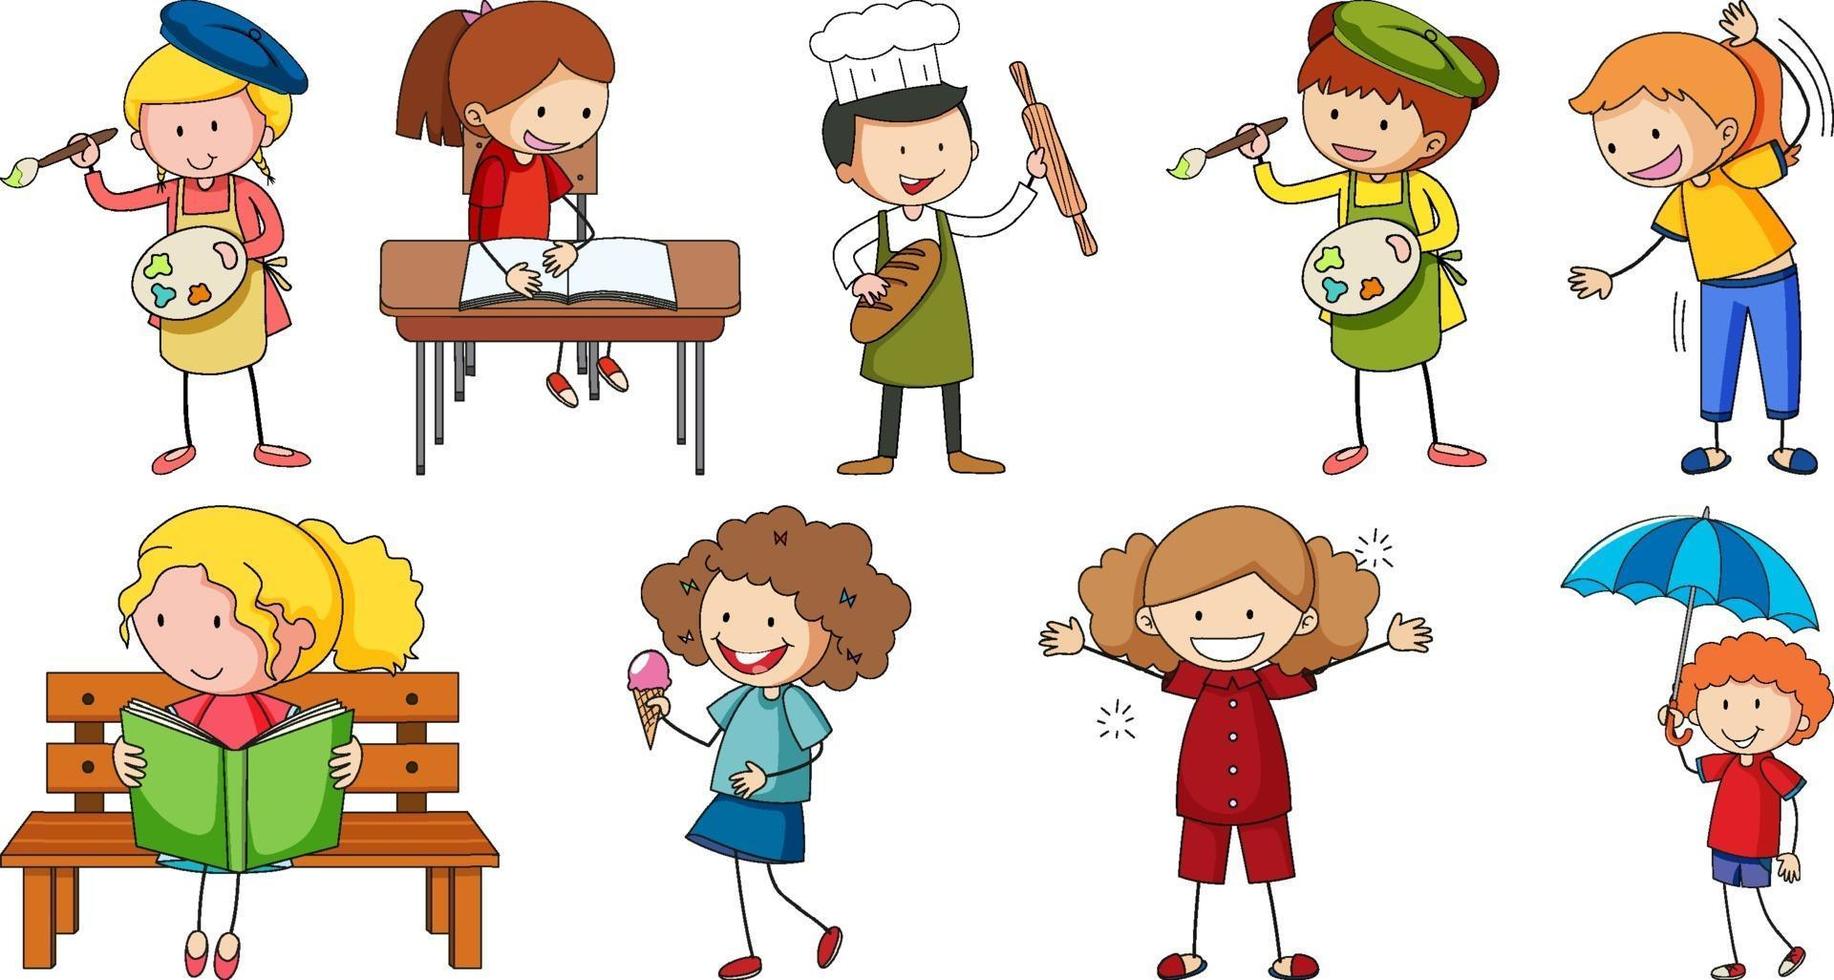 set di diversi doodle bambini personaggio dei cartoni animati vettore